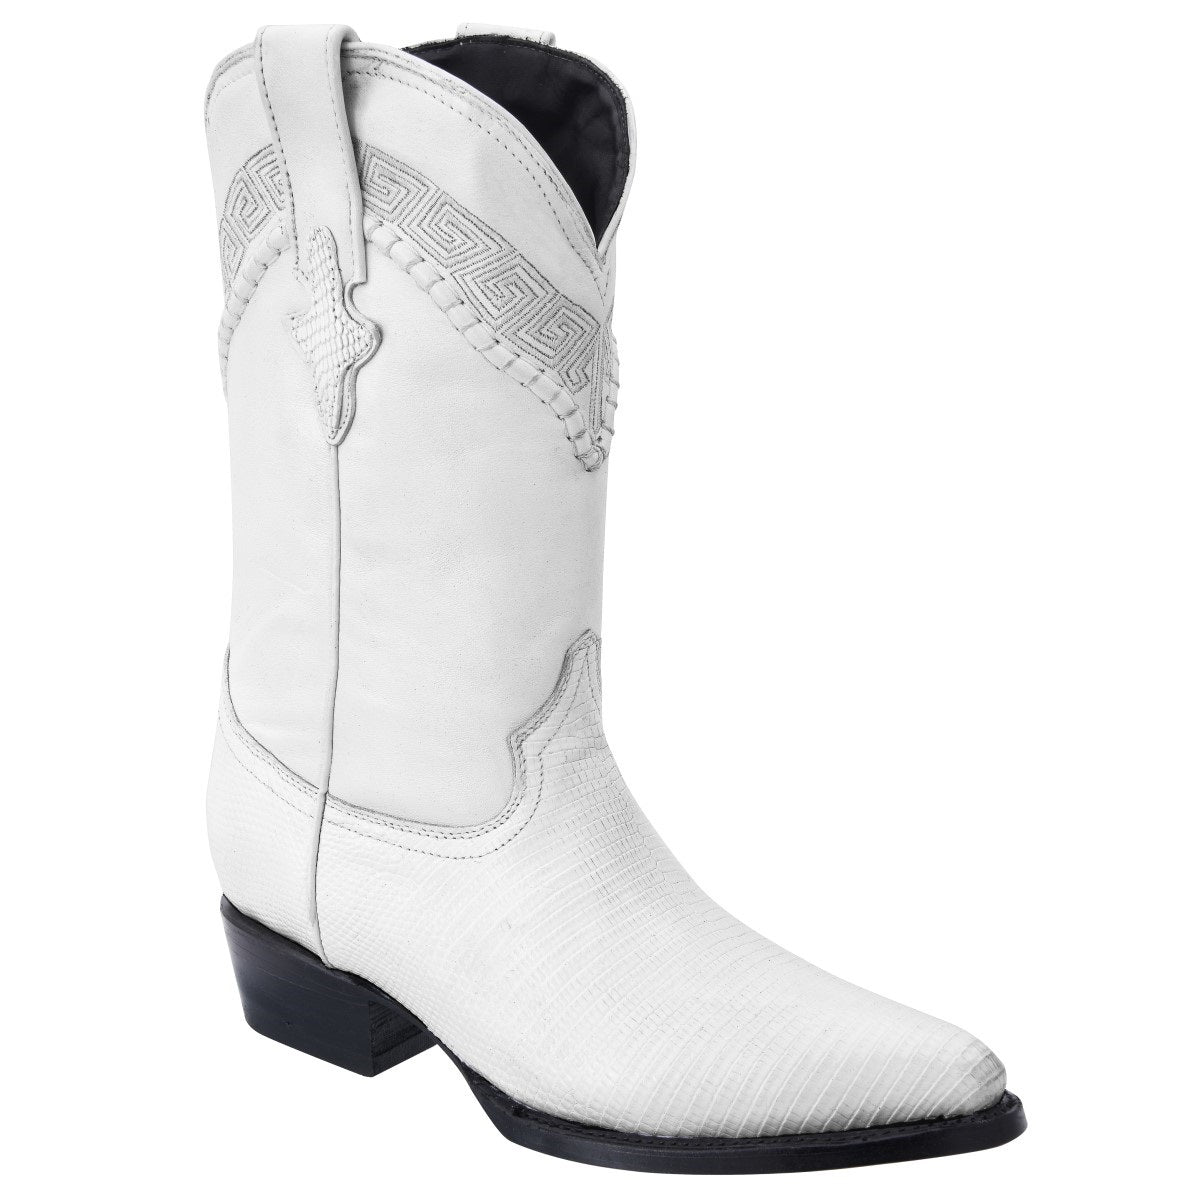 Botas Vaqueras TM-WD0217 - Western Boots